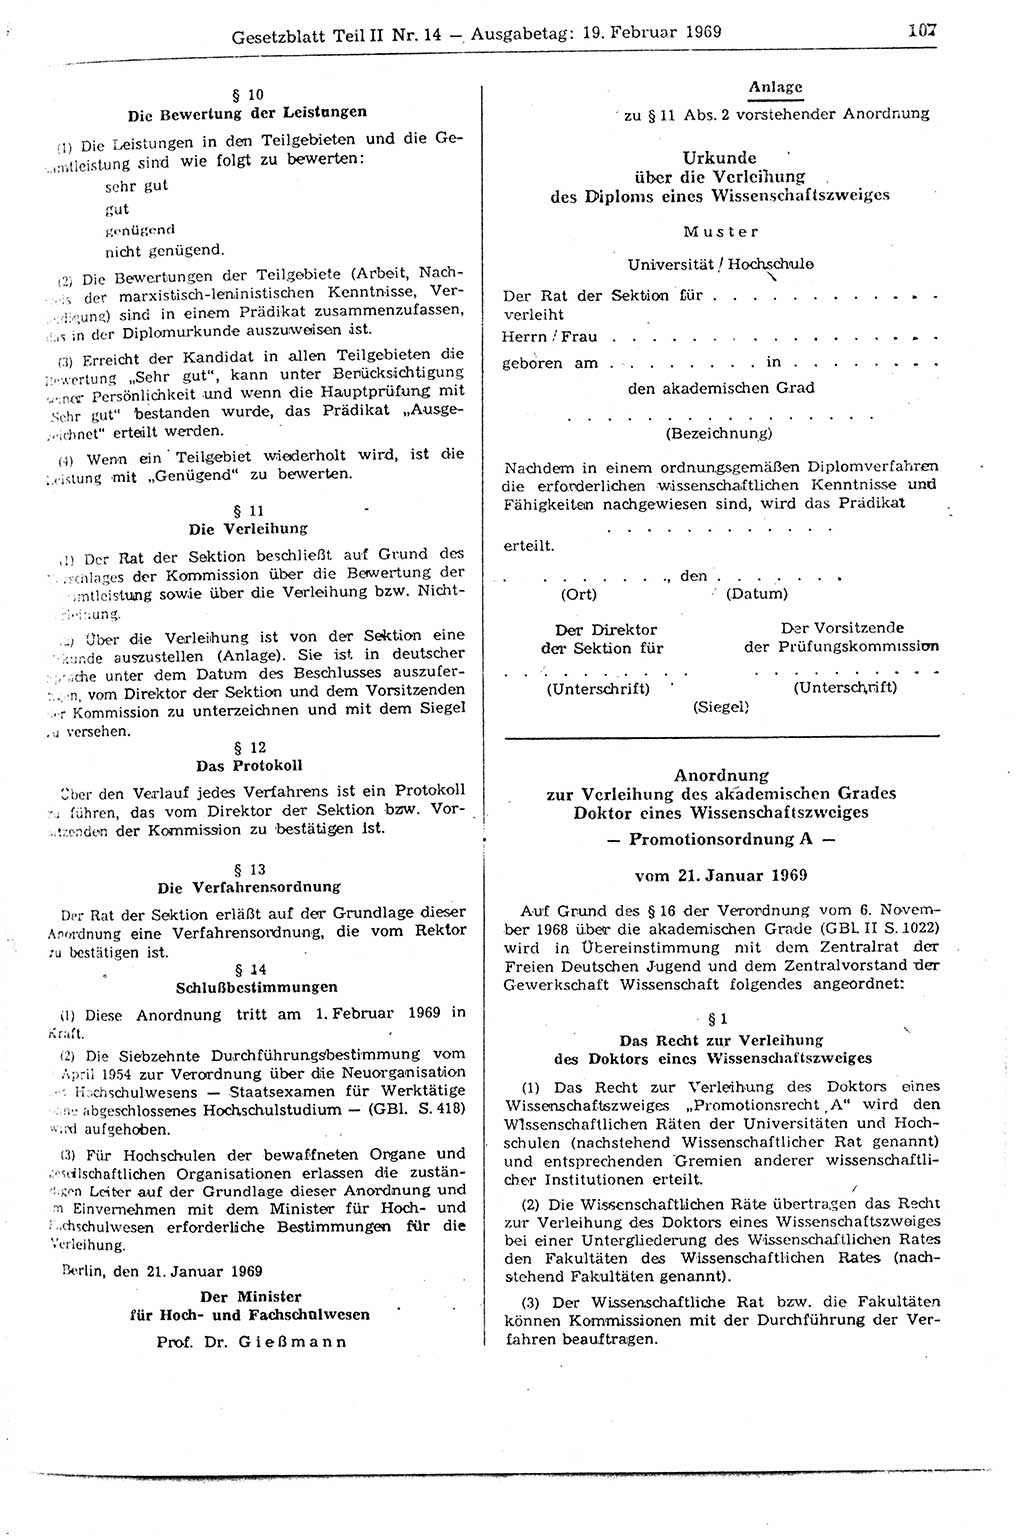 Gesetzblatt (GBl.) der Deutschen Demokratischen Republik (DDR) Teil ⅠⅠ 1969, Seite 107 (GBl. DDR ⅠⅠ 1969, S. 107)